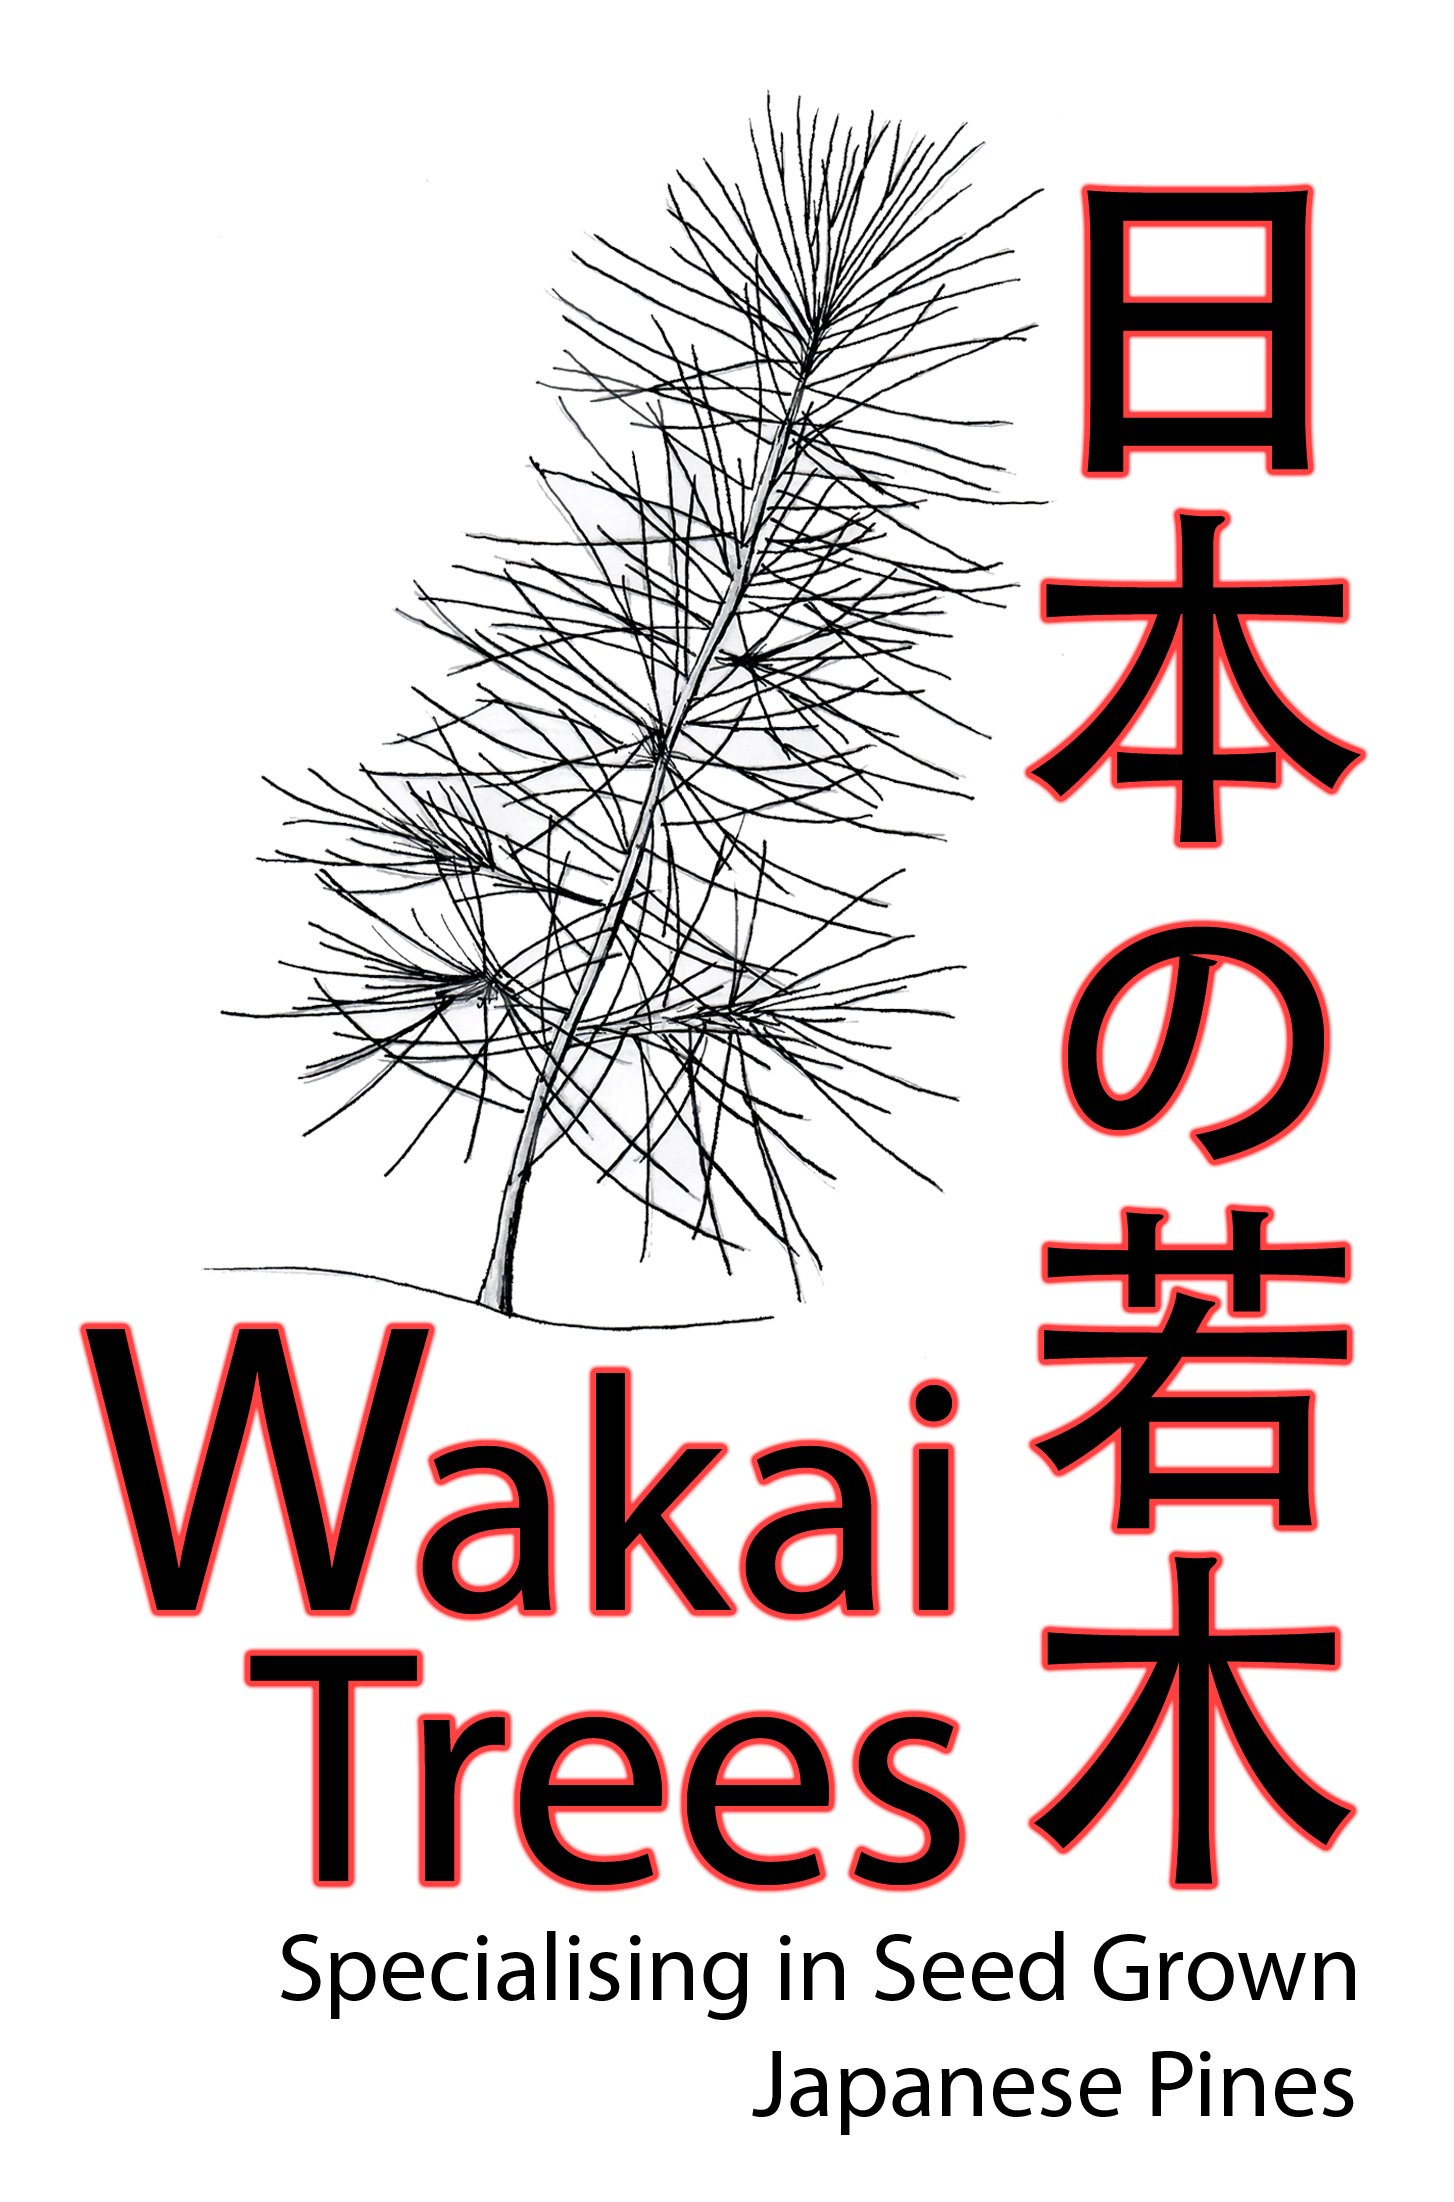 Main Wakai Trees Logo